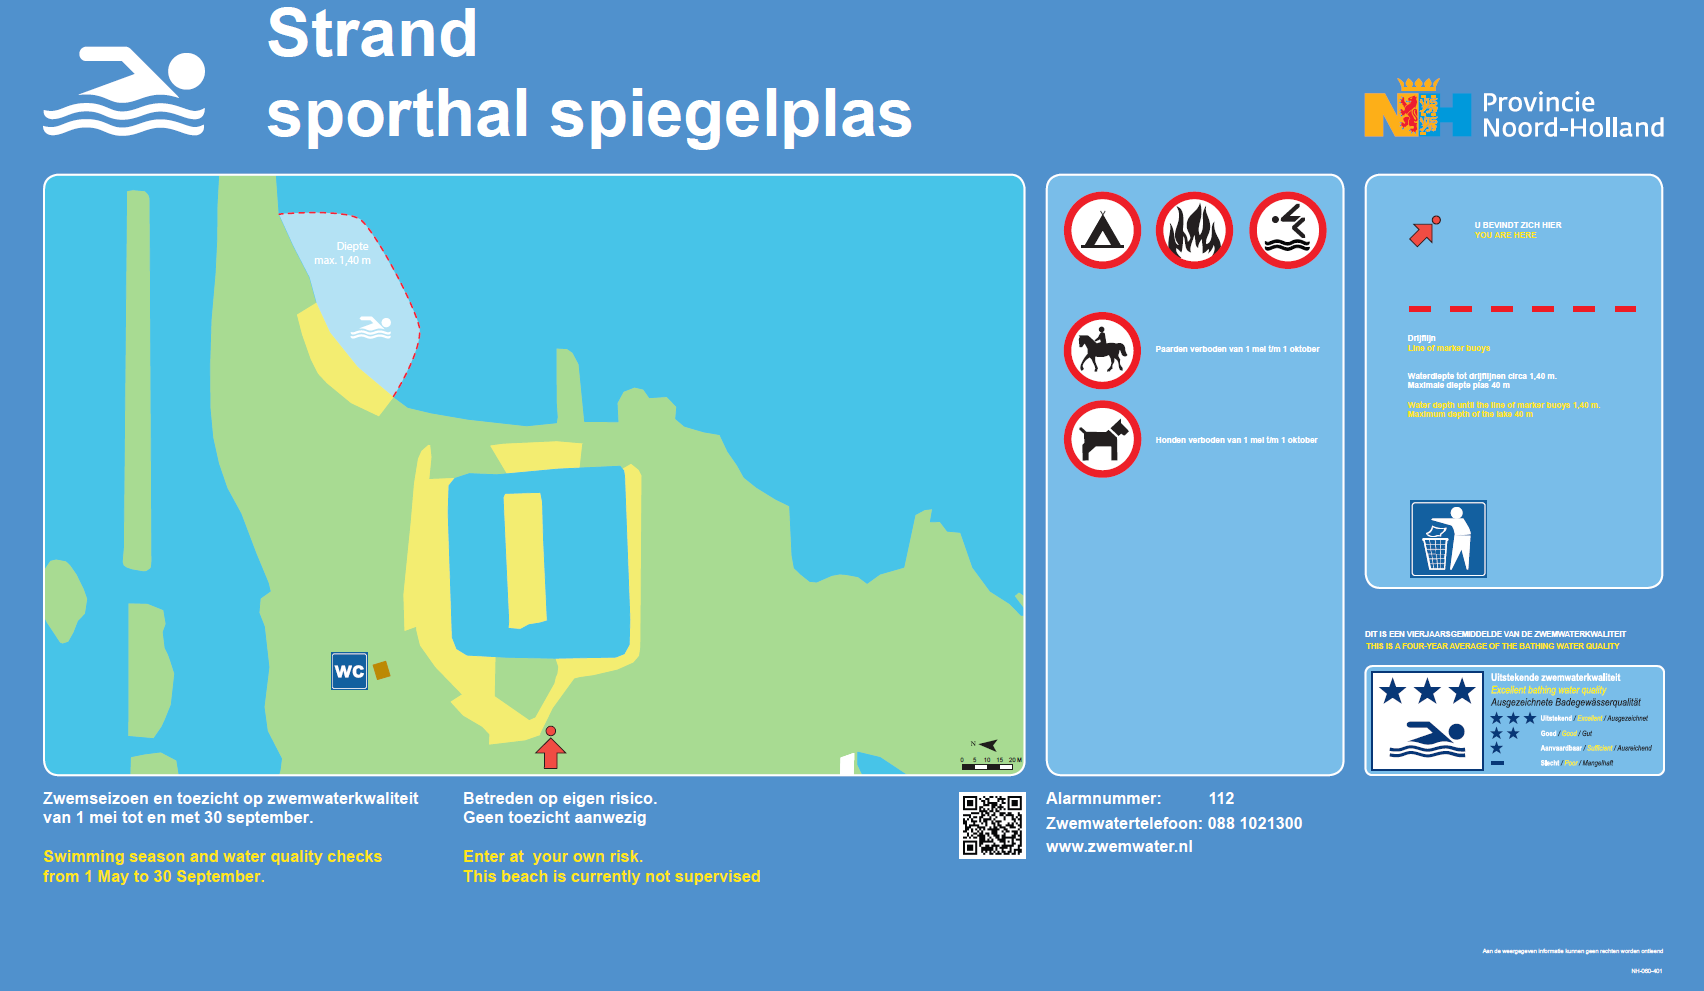 Het informatiebord bij zwemlocatie Strand Sporthal Spiegelplas